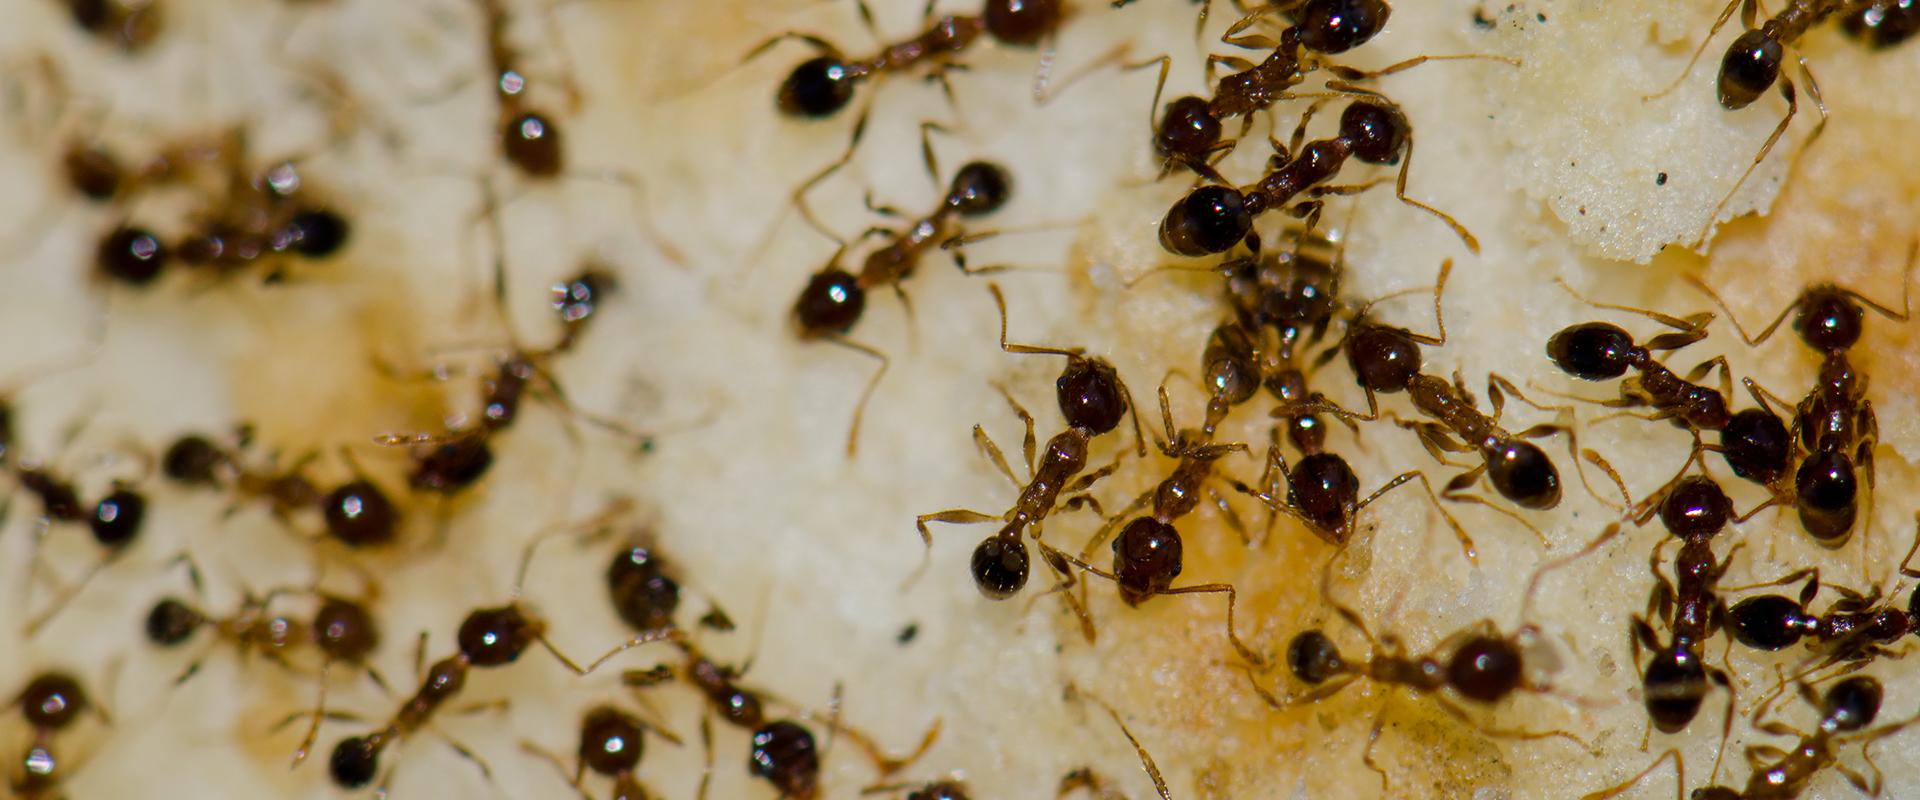 ants on a cake in mesa arizona